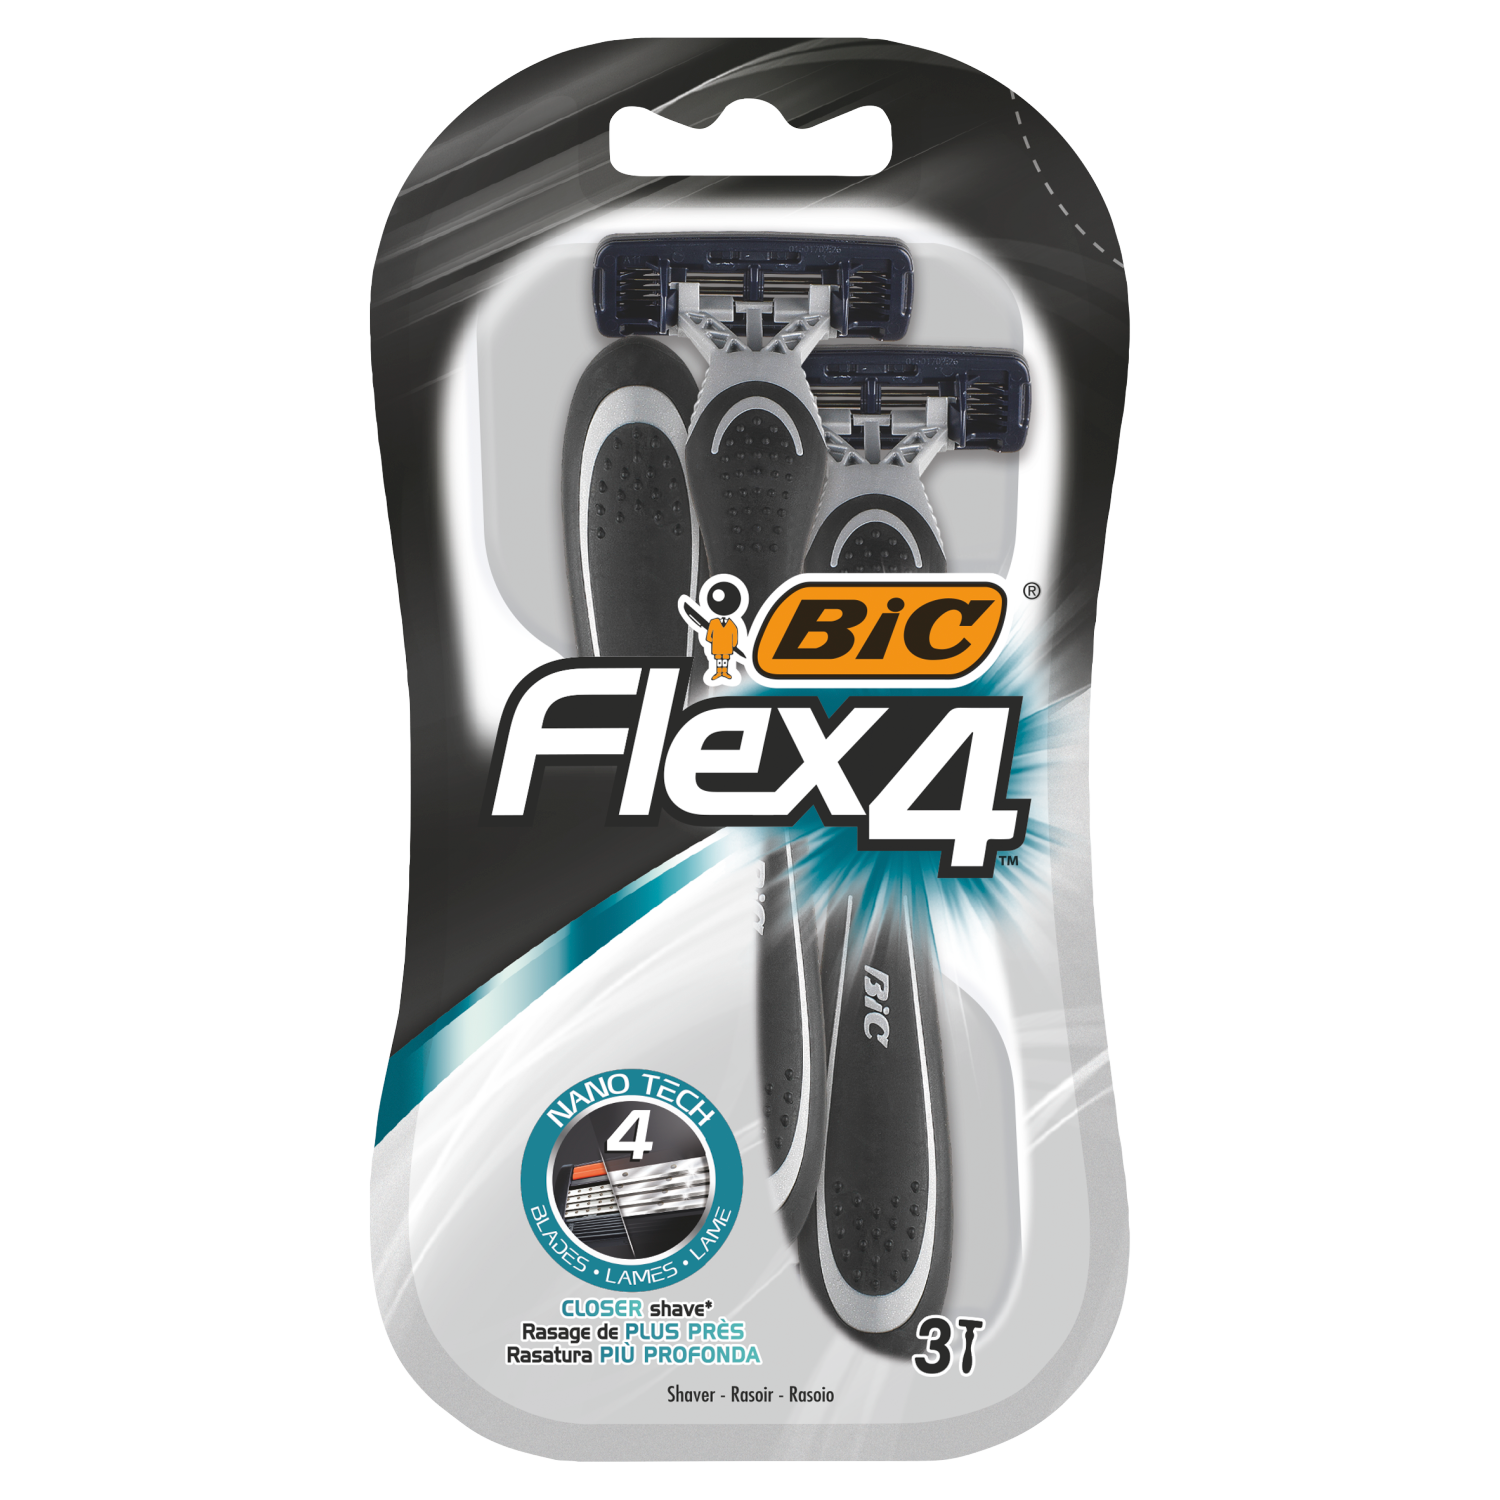 Bic Flex 4 моноблочные бритвы, 3 шт/1 упаковка